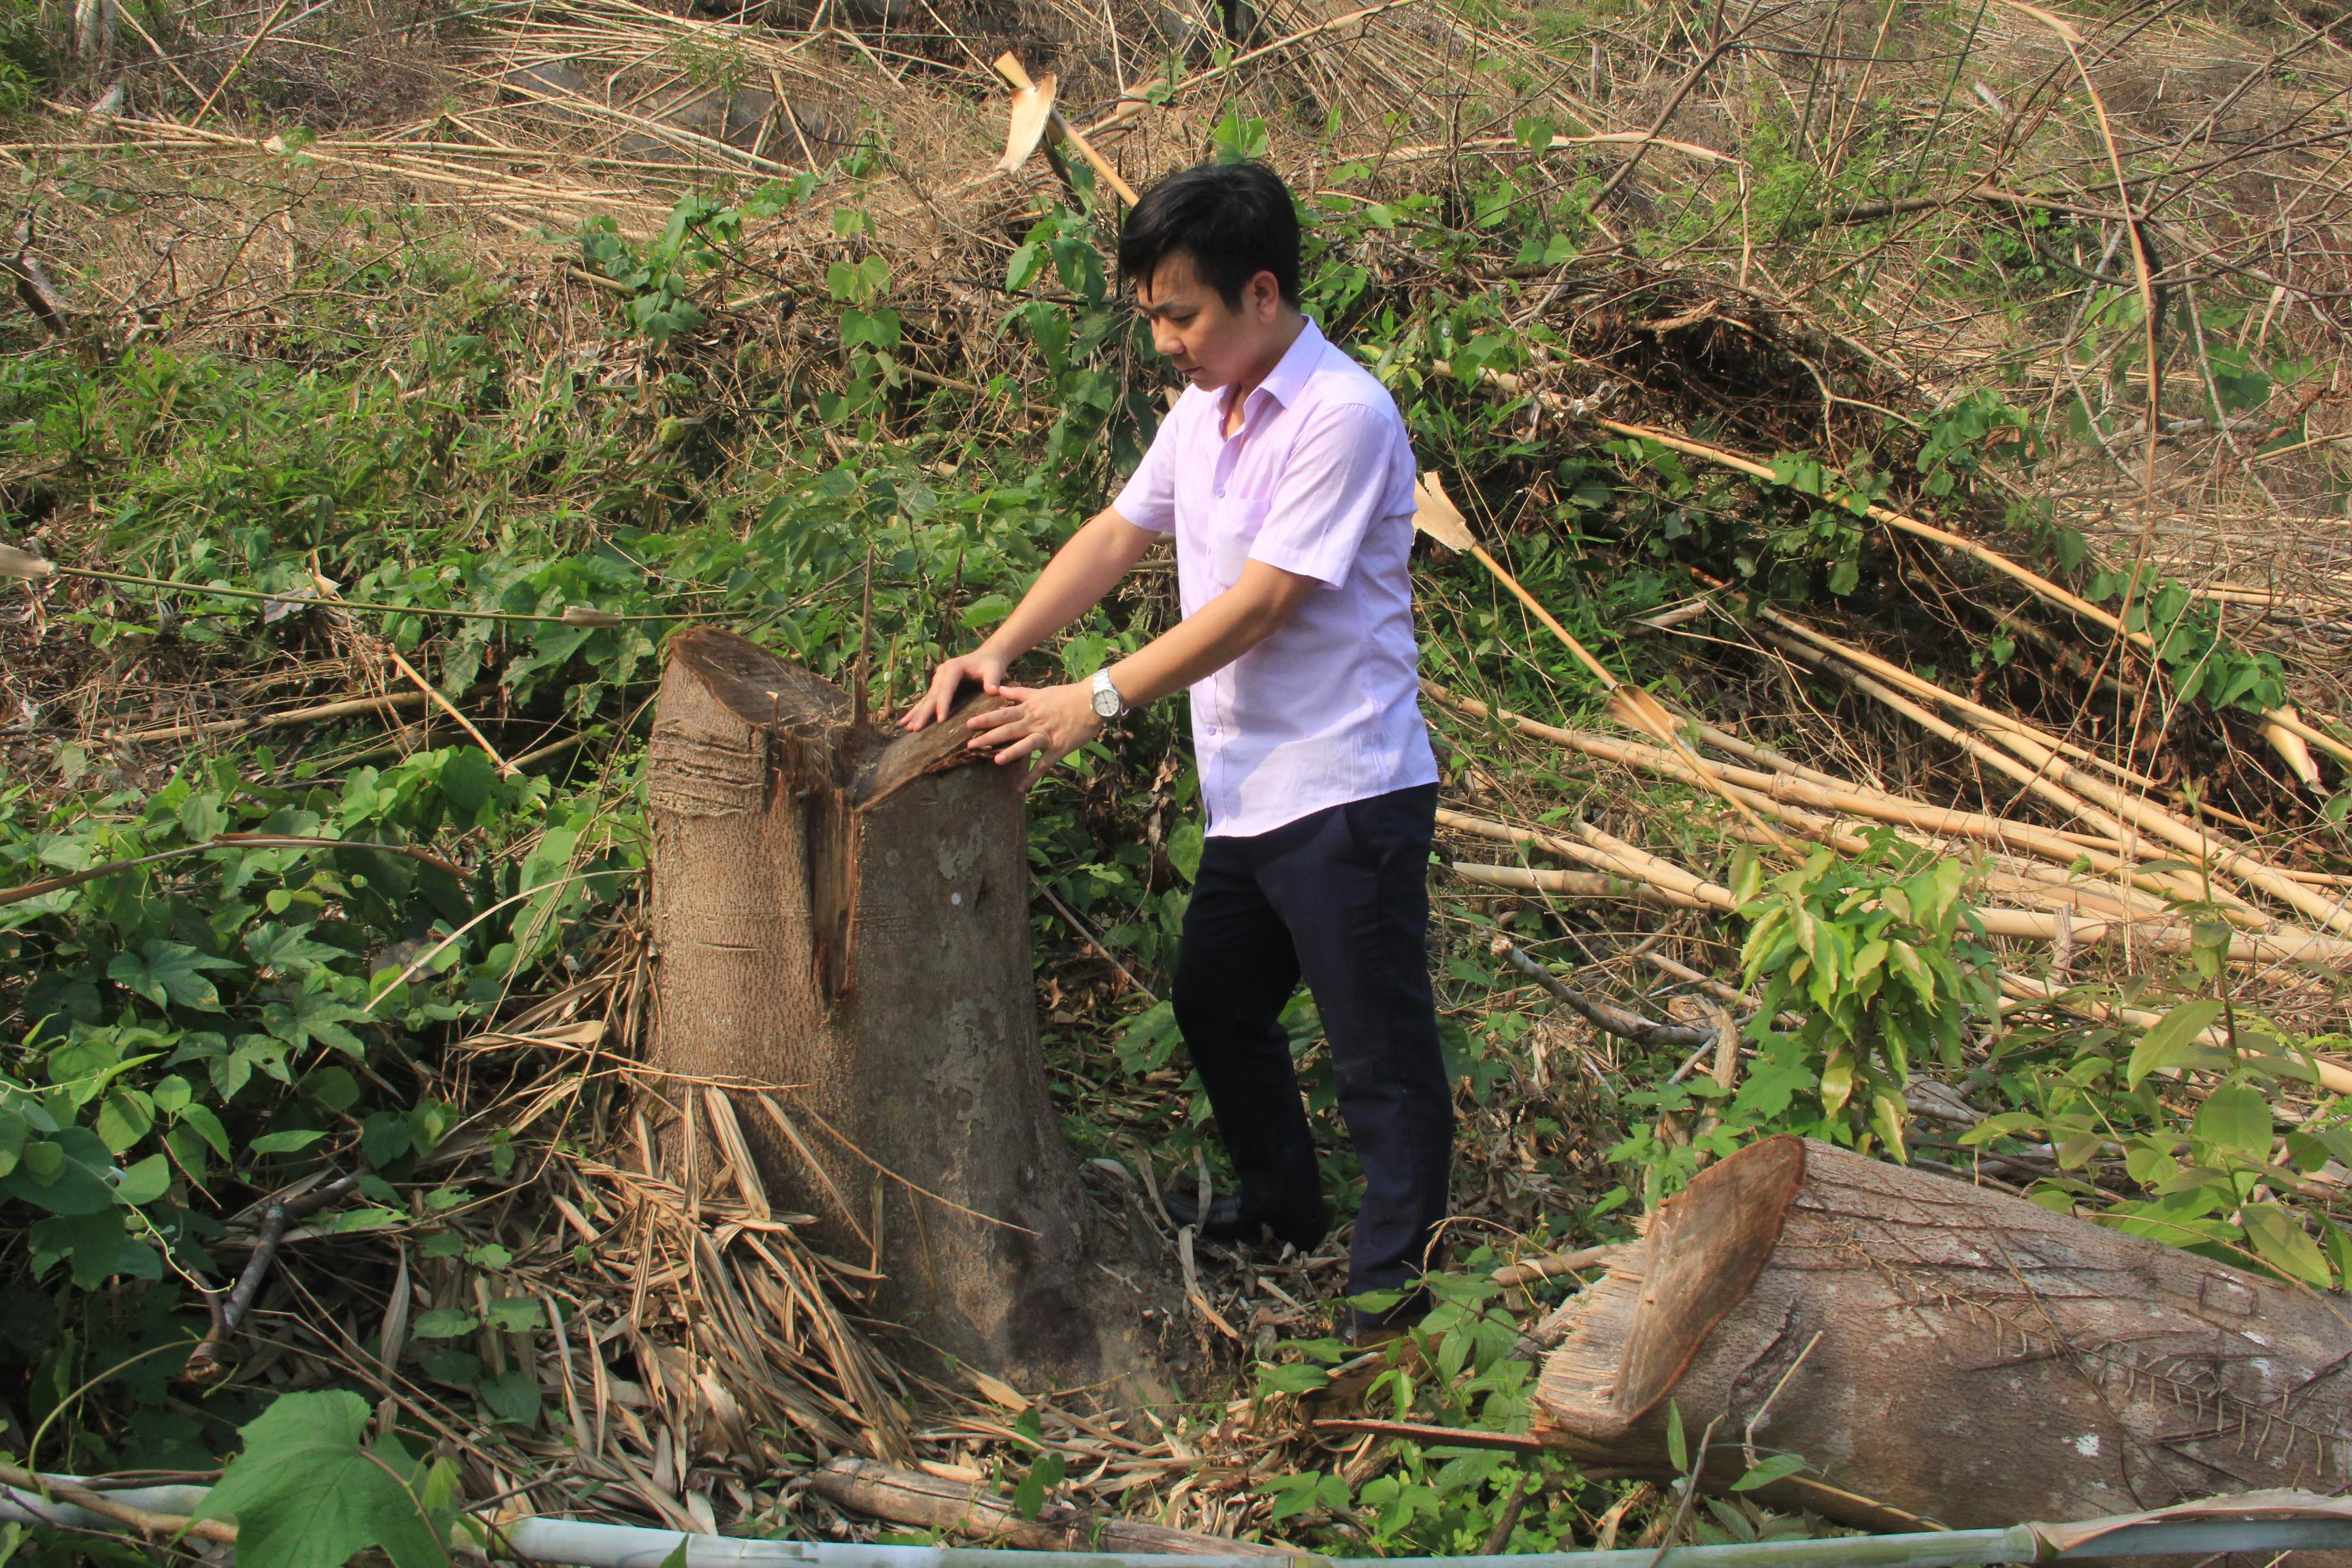 Một khu rừng ở xã Châu Phong (Quỳ Châu) được đánh giá là rừng nghèo kiệt, không có khả năng phục hồi thành rừng tự nhiên có giá trị kinh tế cao nhưng có nhiều cây gỗ với đường kính lớn. Ảnh: Phạm Bằng